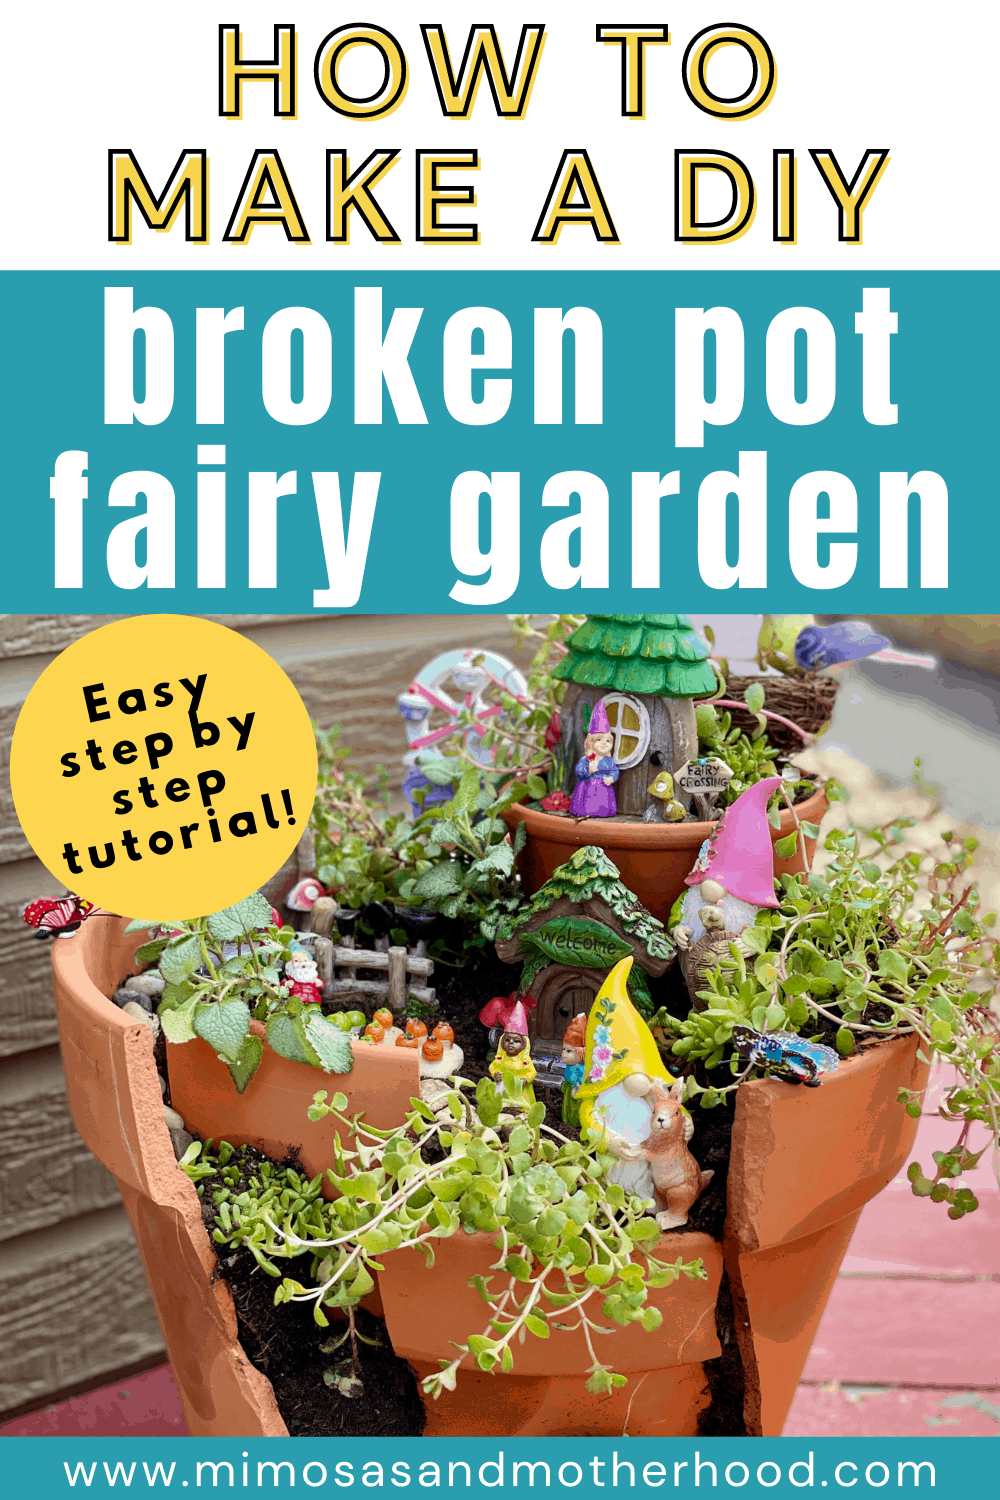 How to Make a Broken Pot Fairy Garden